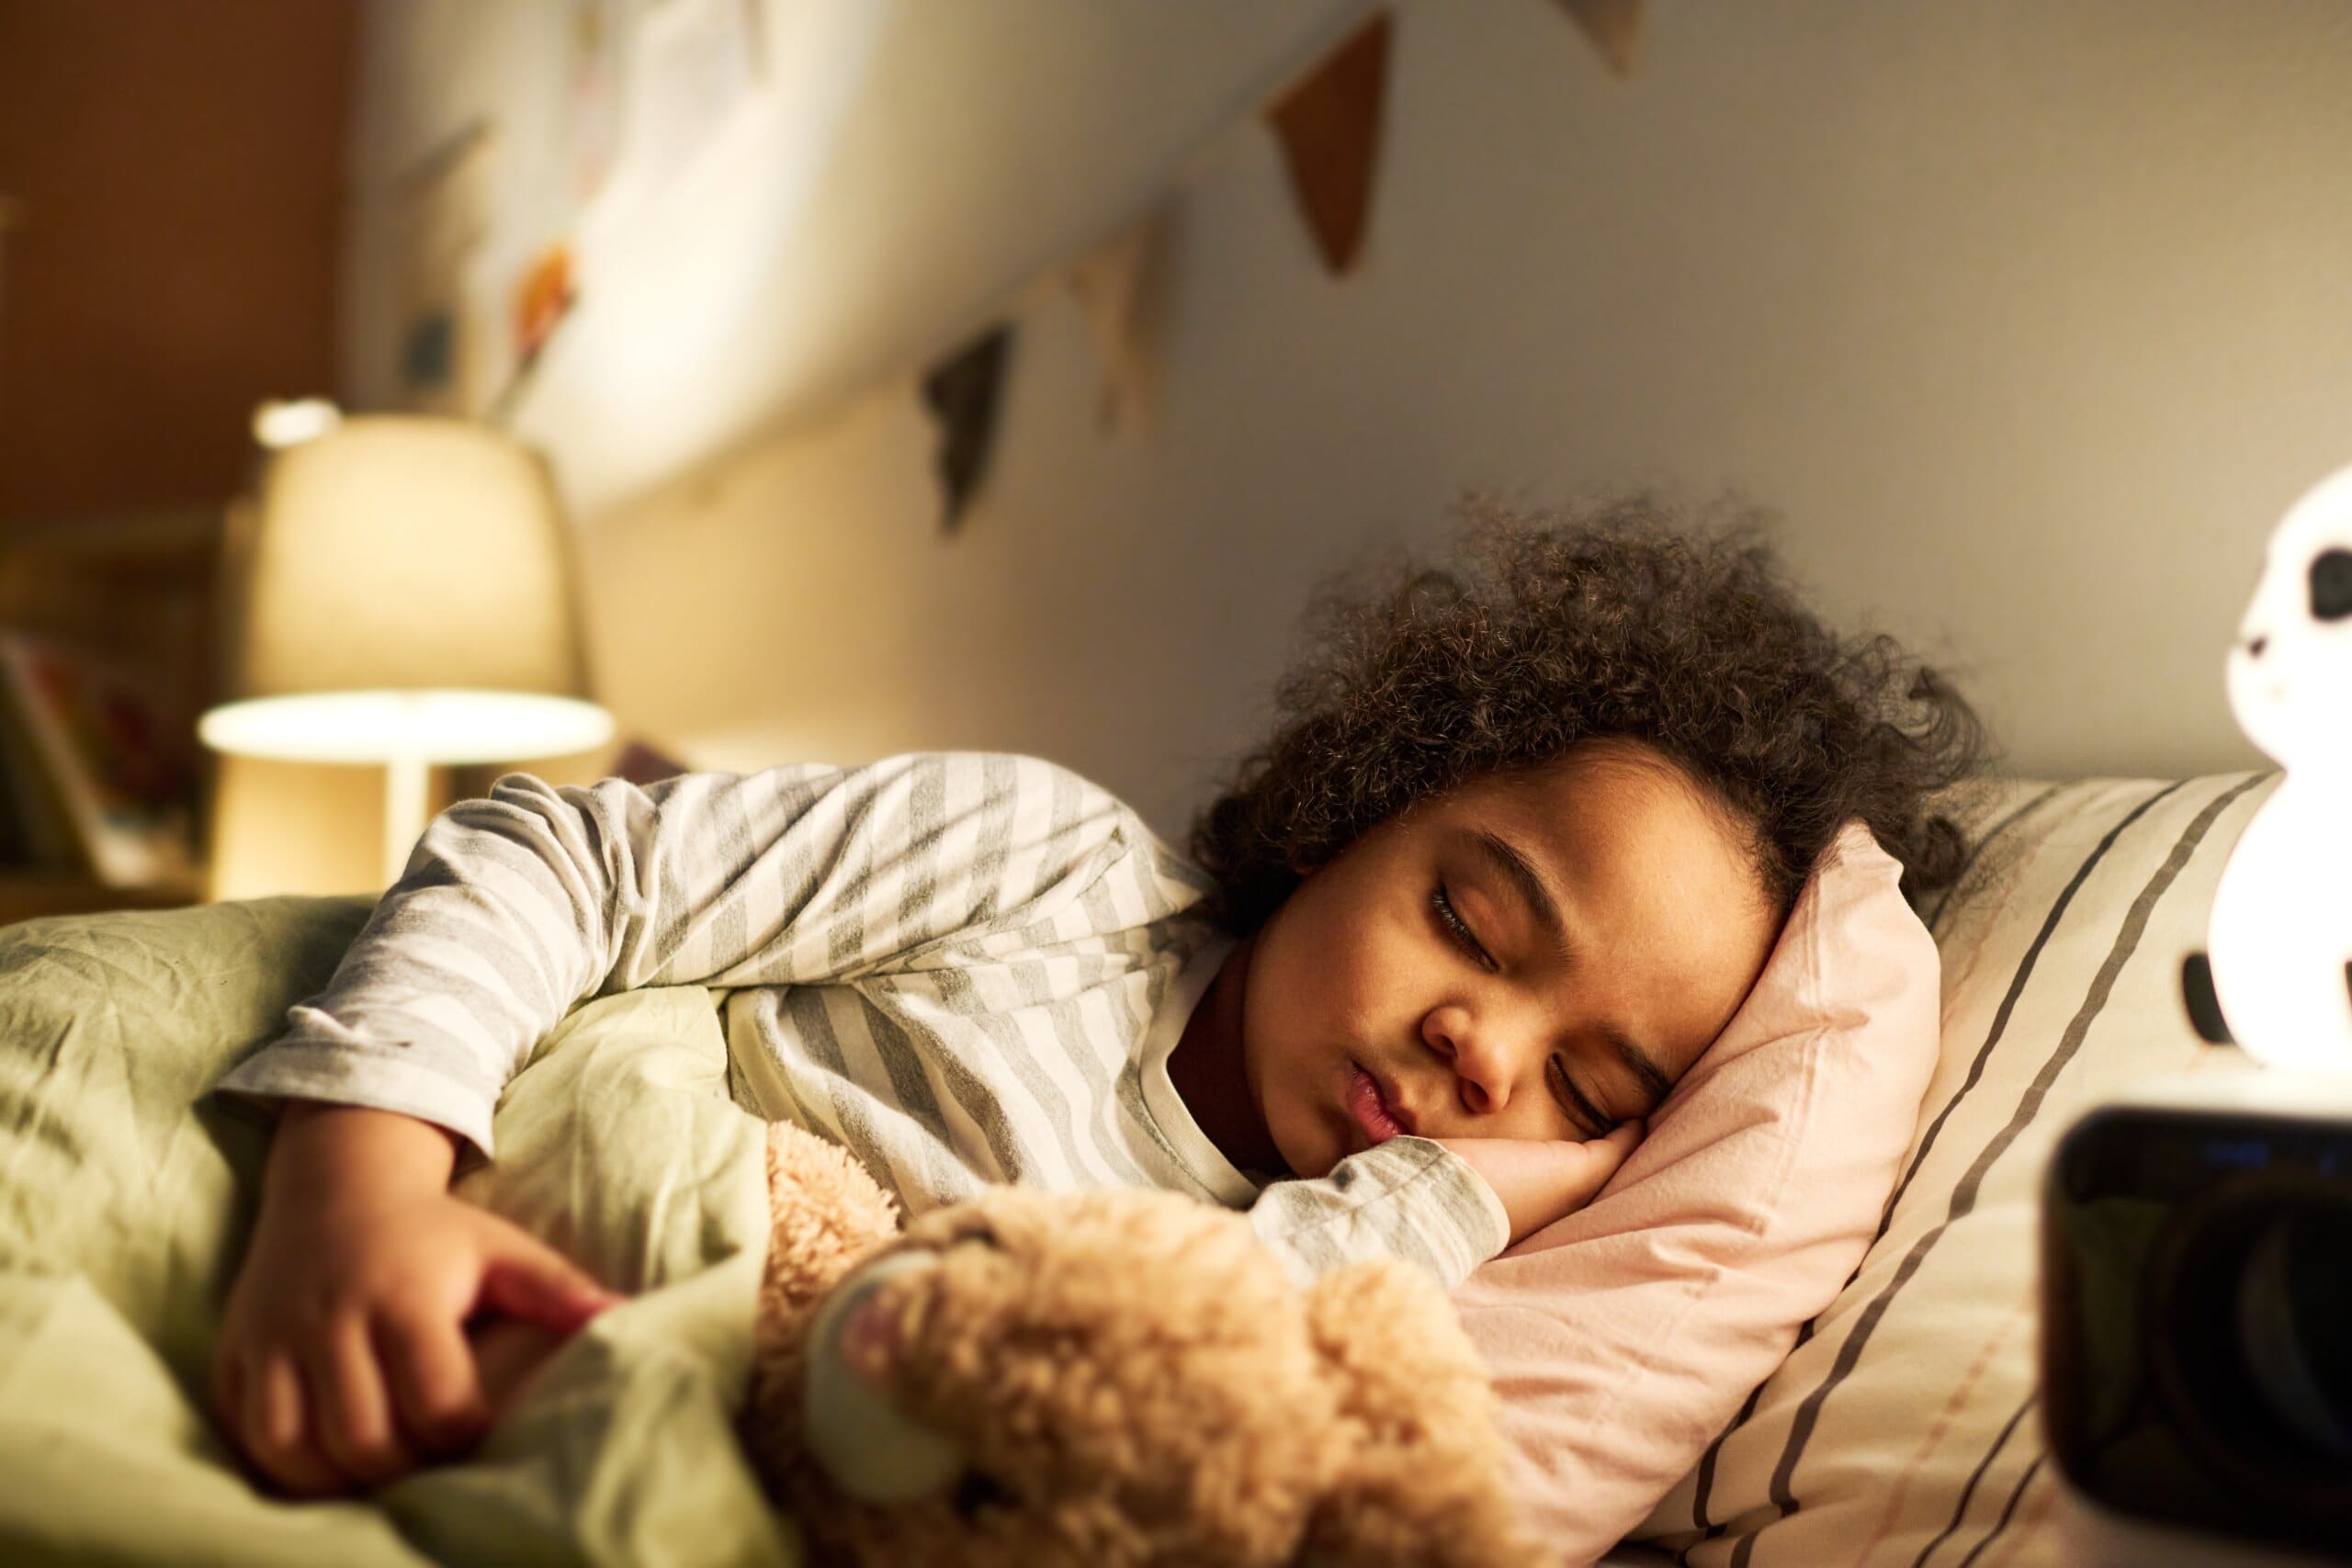 Small child asleep cuddling a teddy bear in bed.